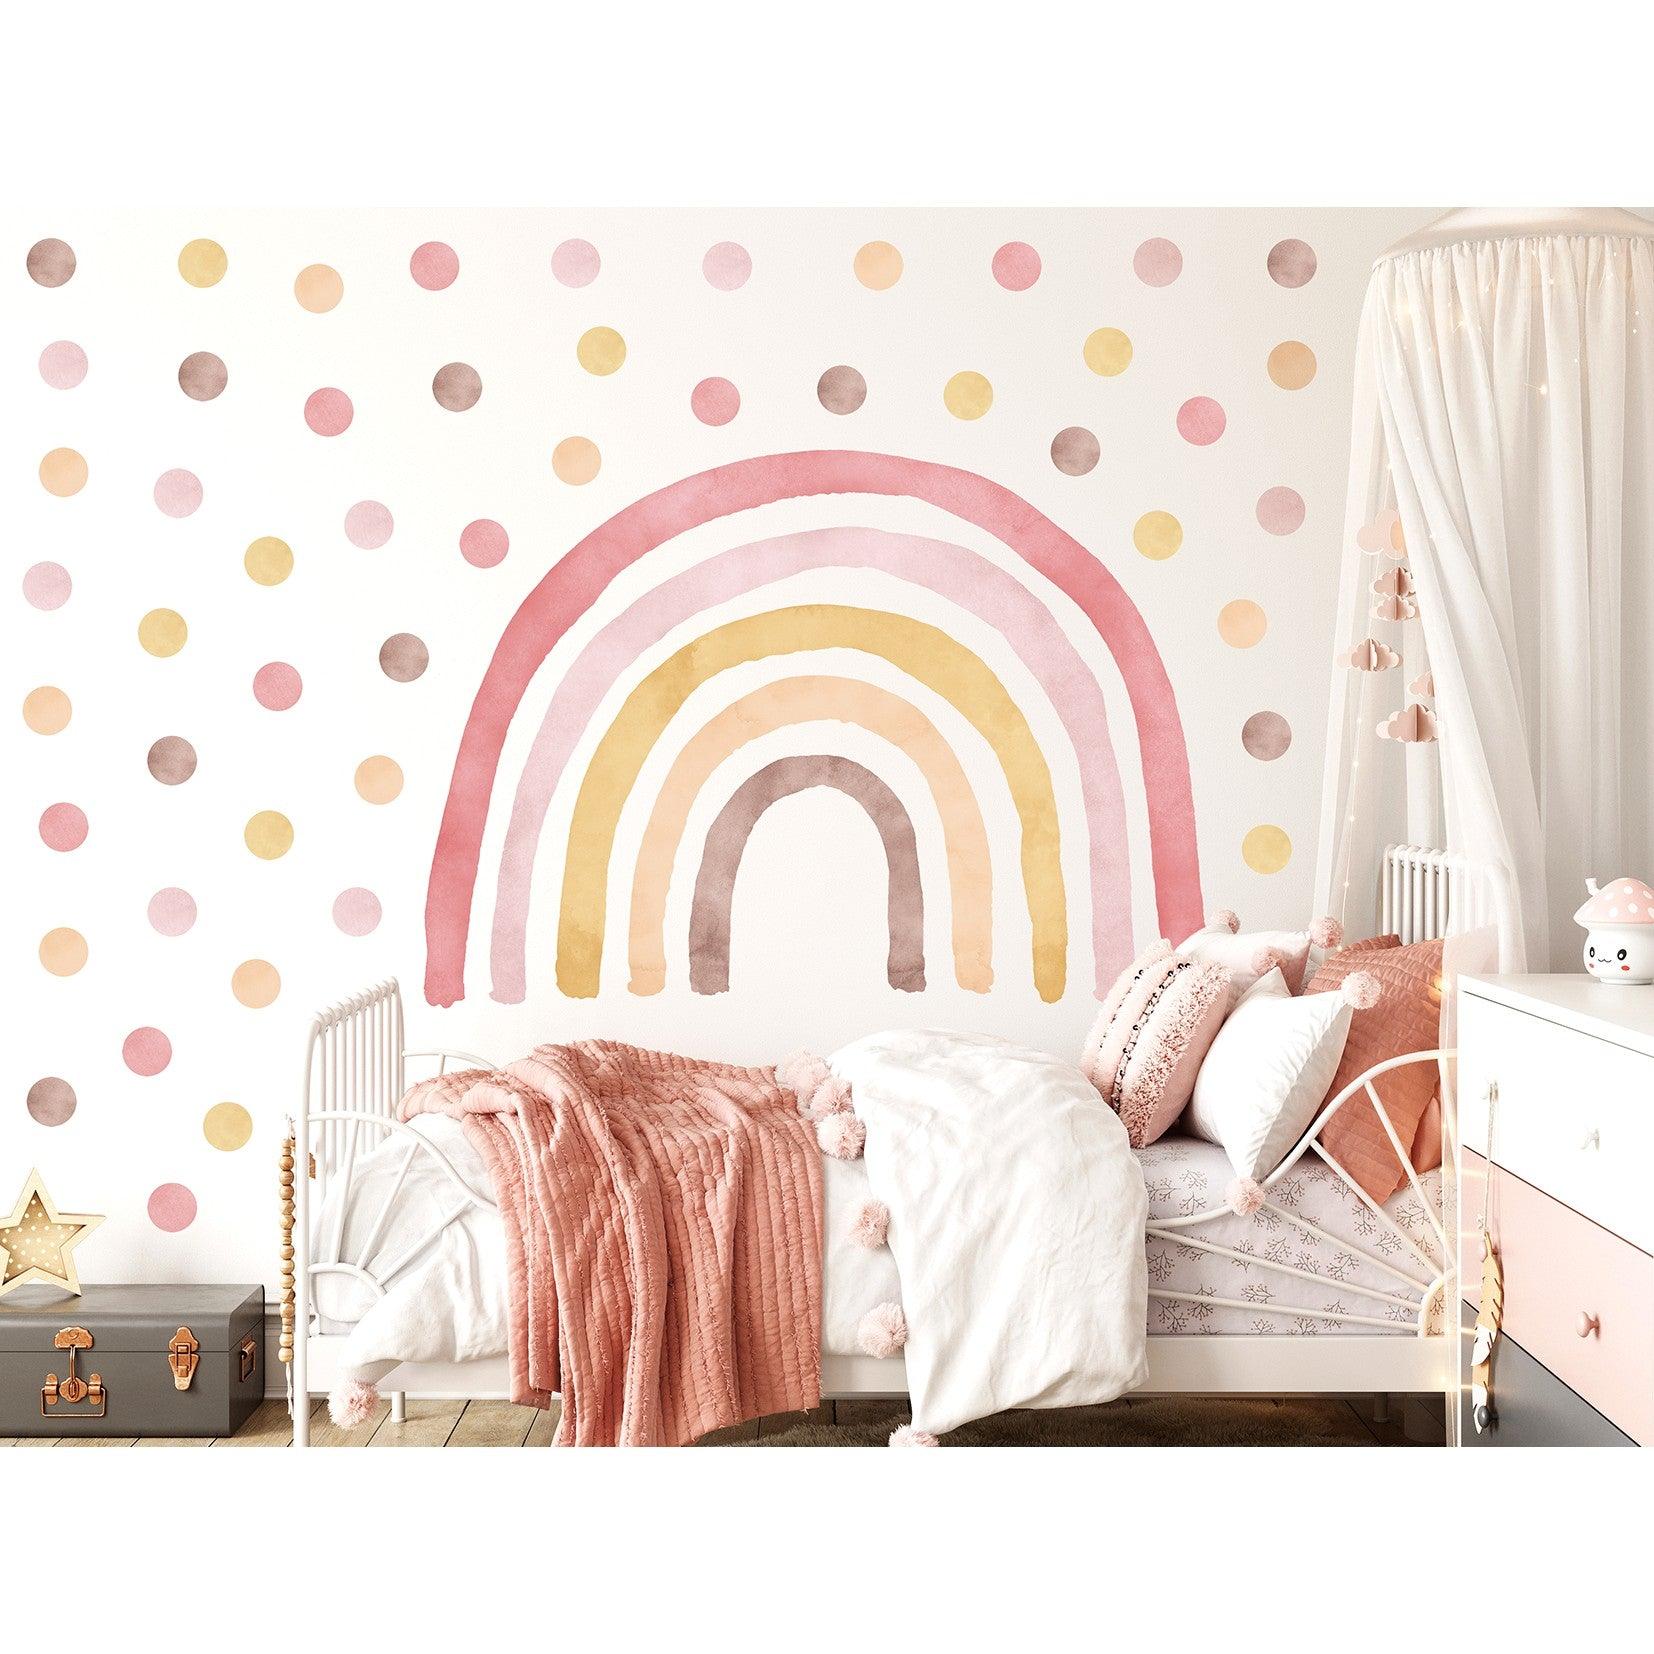 Wandtattoo Kinderzimmer - Regenbogen mit Punkte Pink